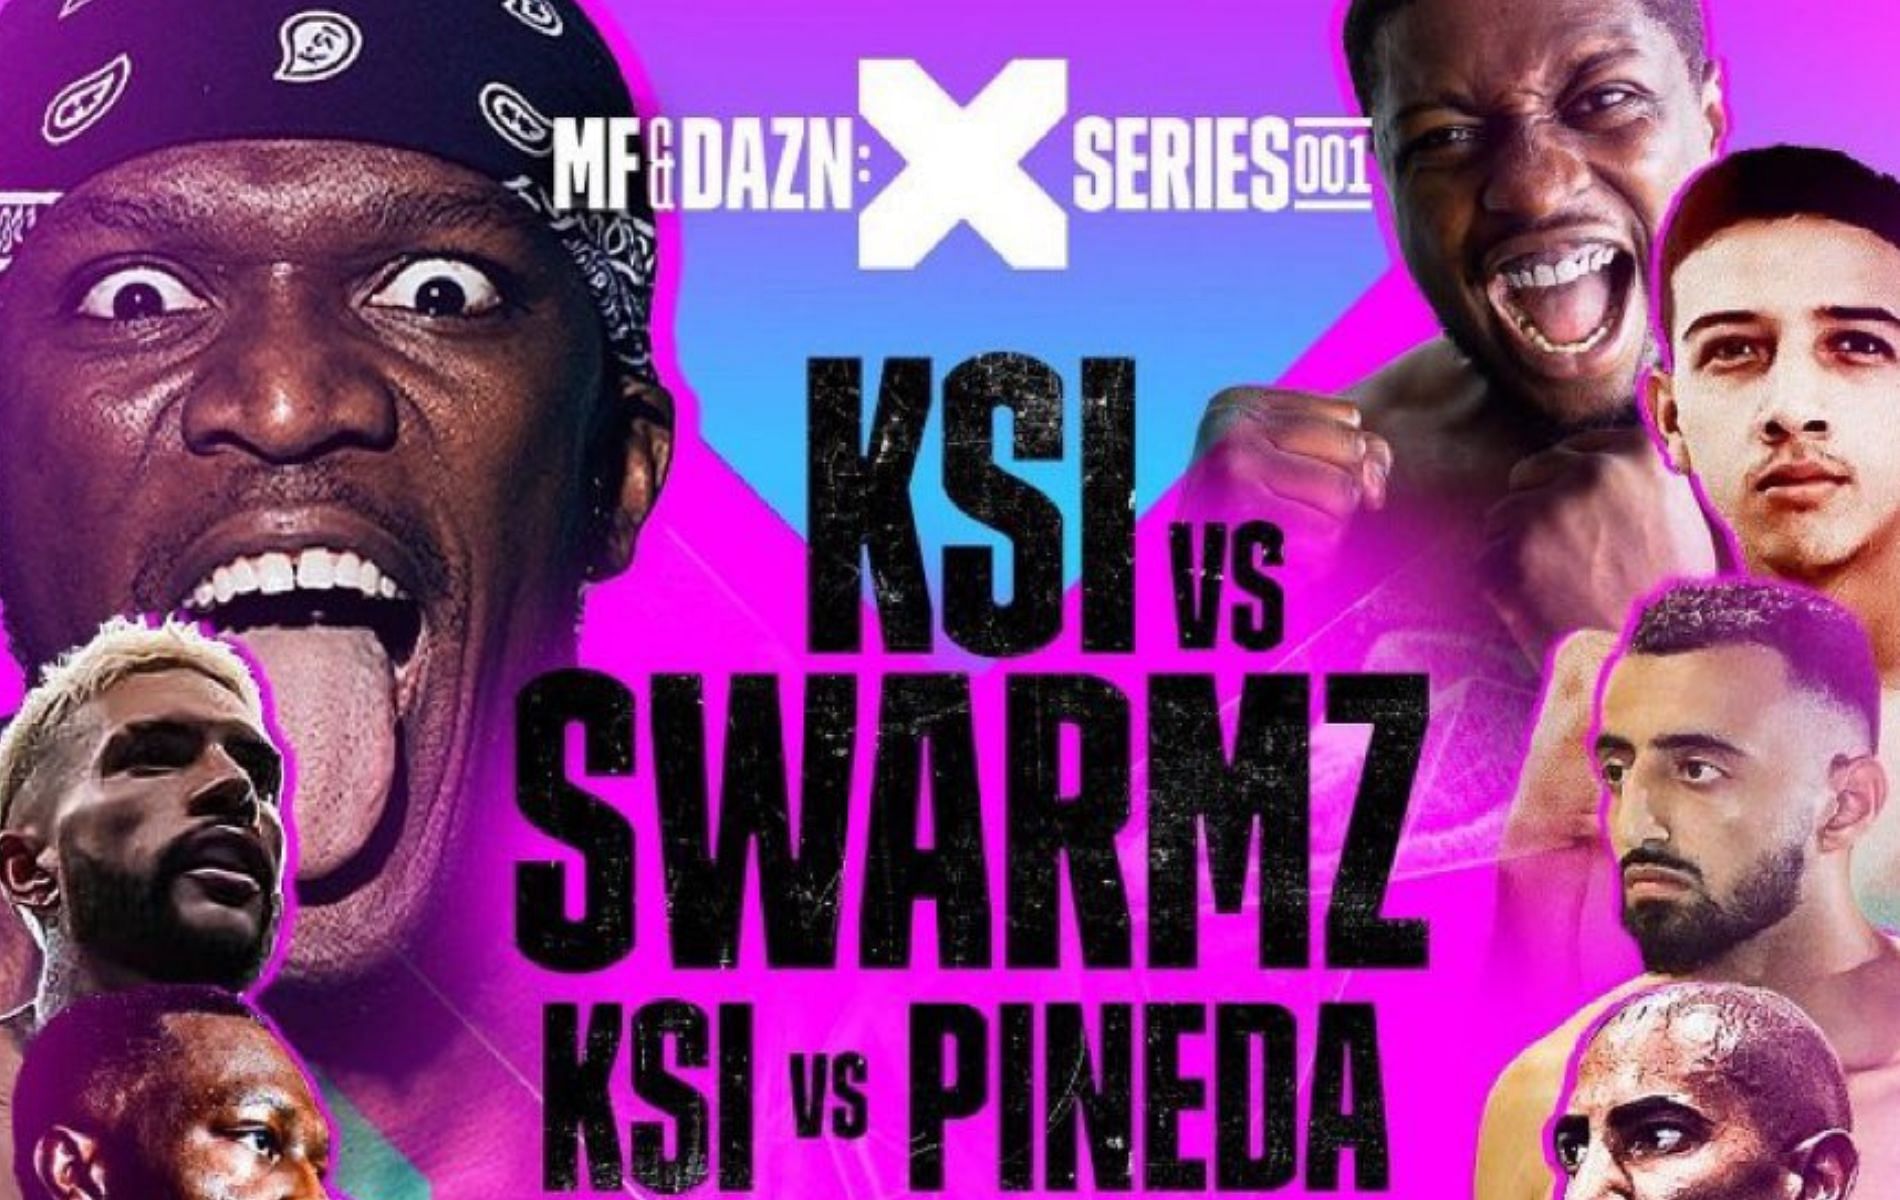 KSI vs Swarmz and KSI vs Pineda Fight card, media workout, press